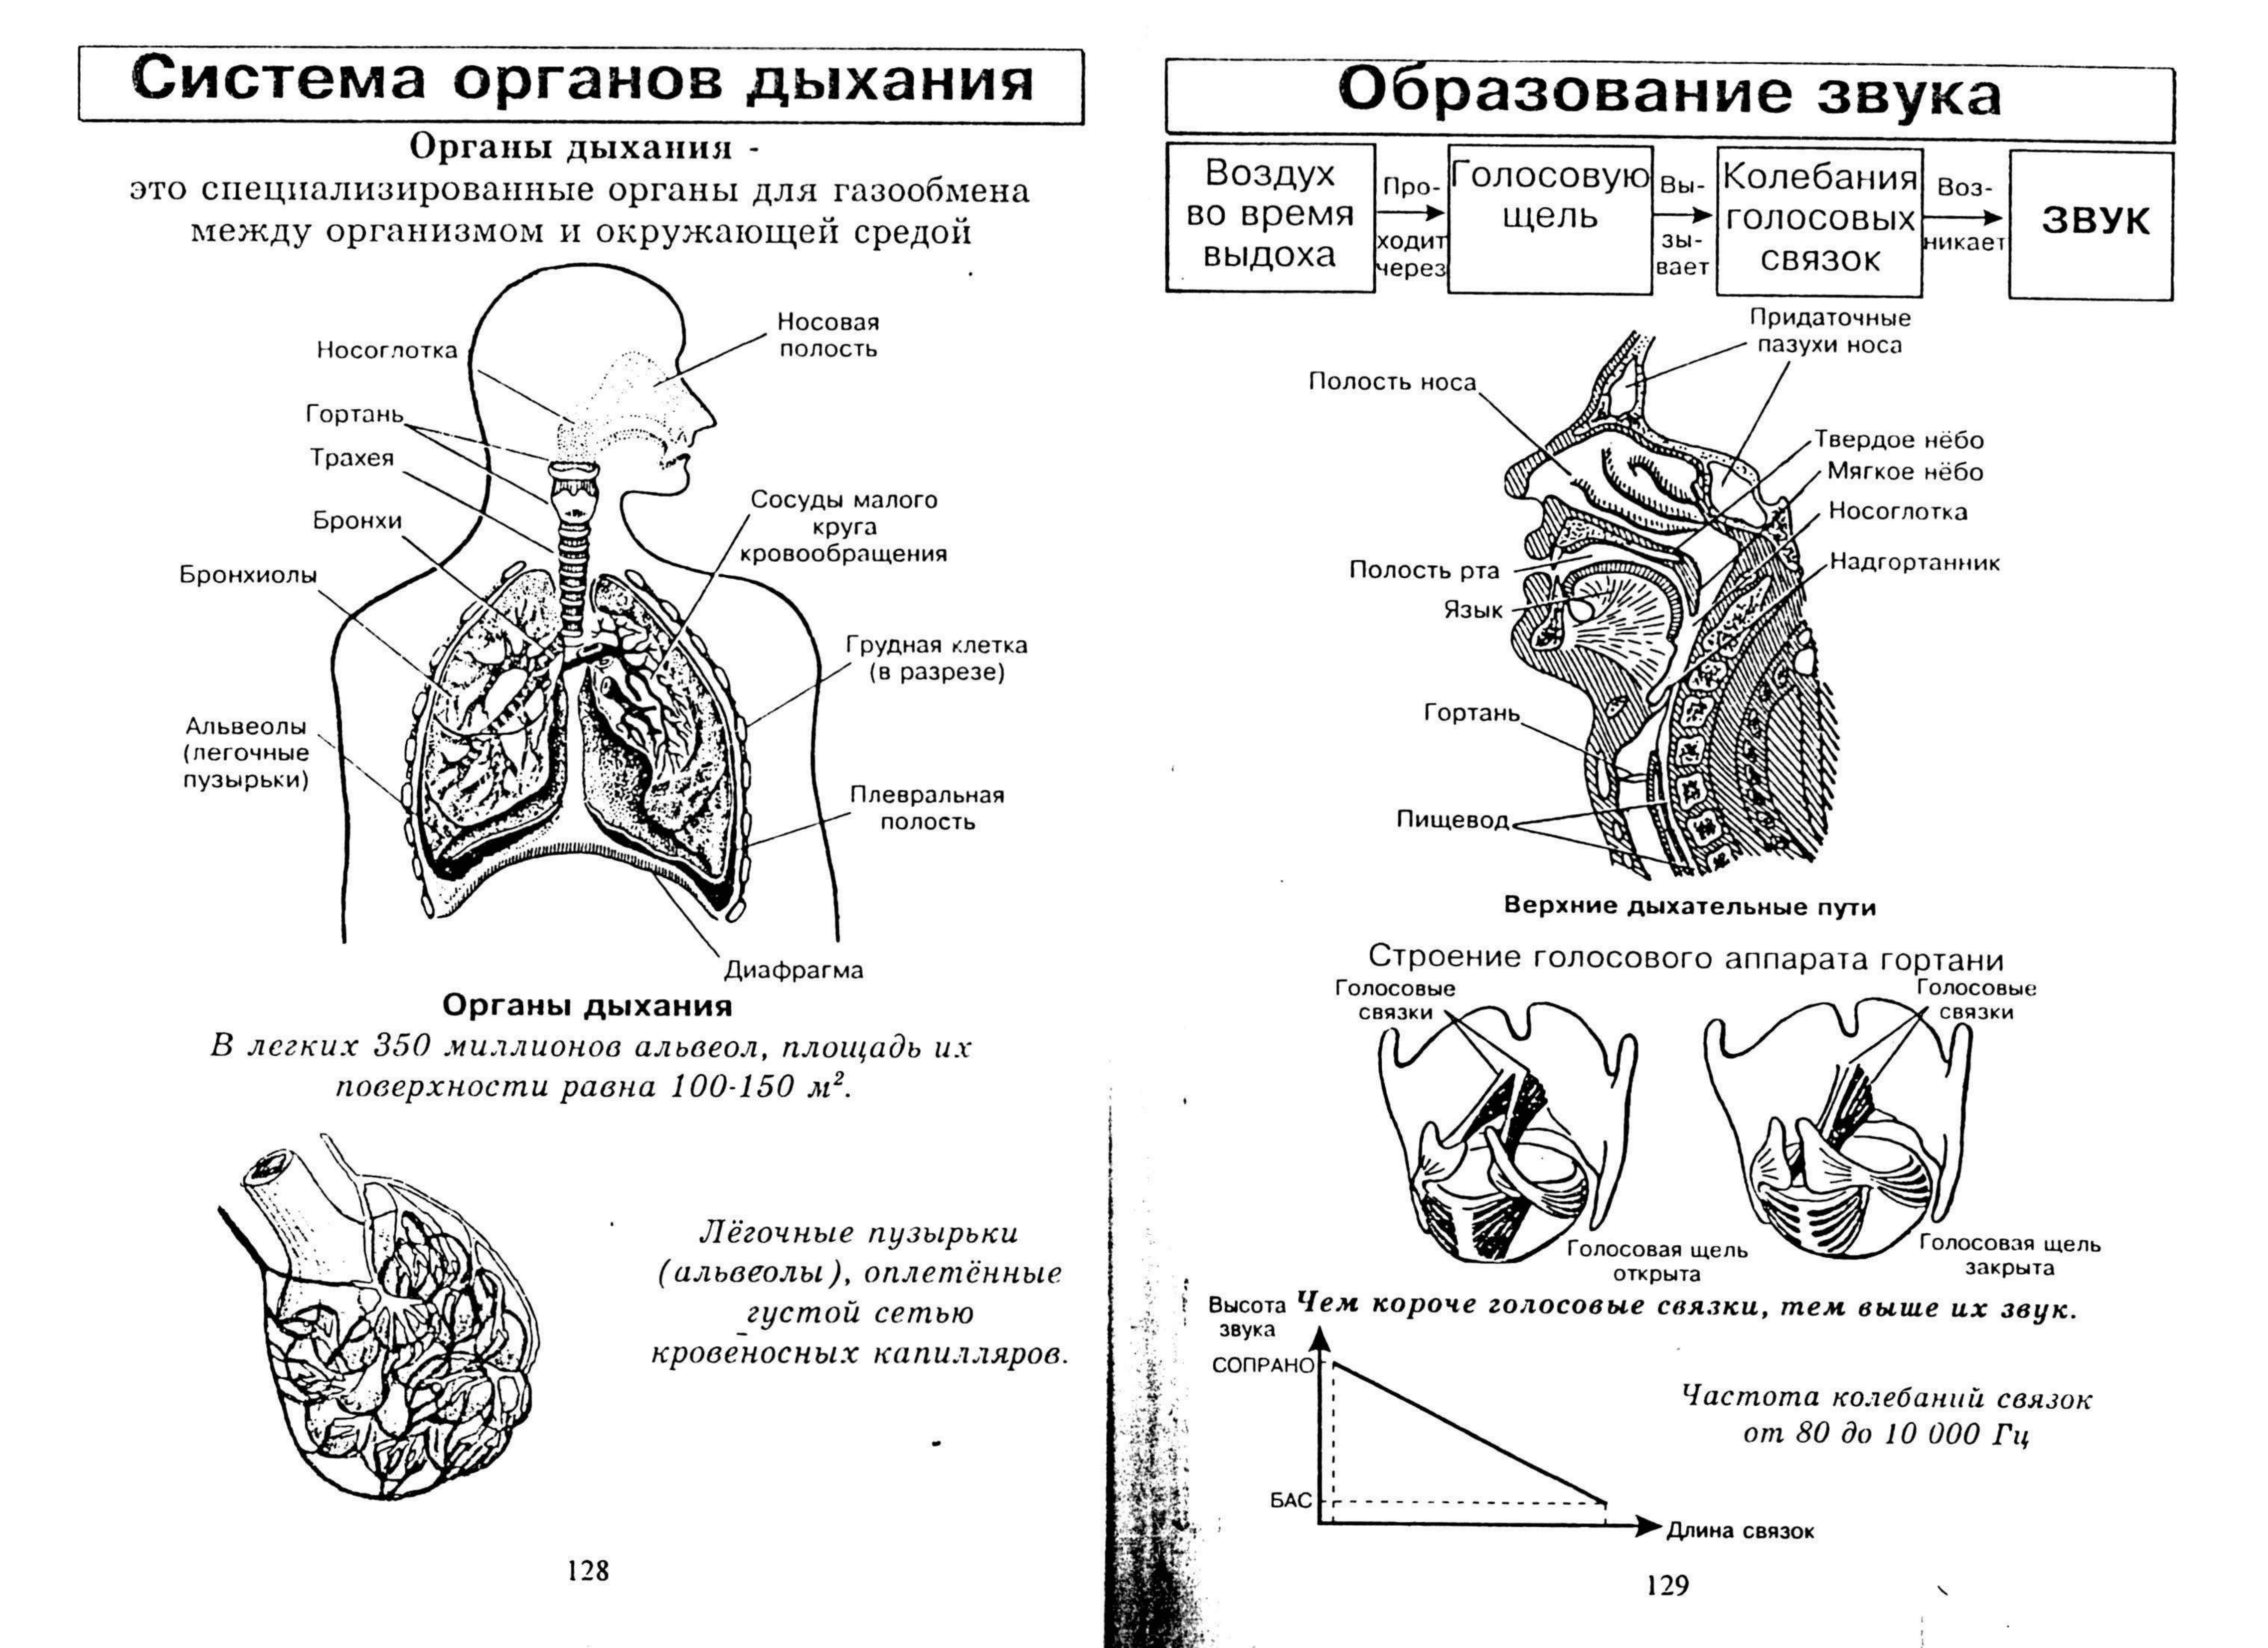 Биология человека егэ. Схема органов дыхательной системы функции. Конспект по биологии дыхательная система 8 класс. Дыхательная система человека таблица ЕГЭ. Опорный конспект дыхательная система человека.